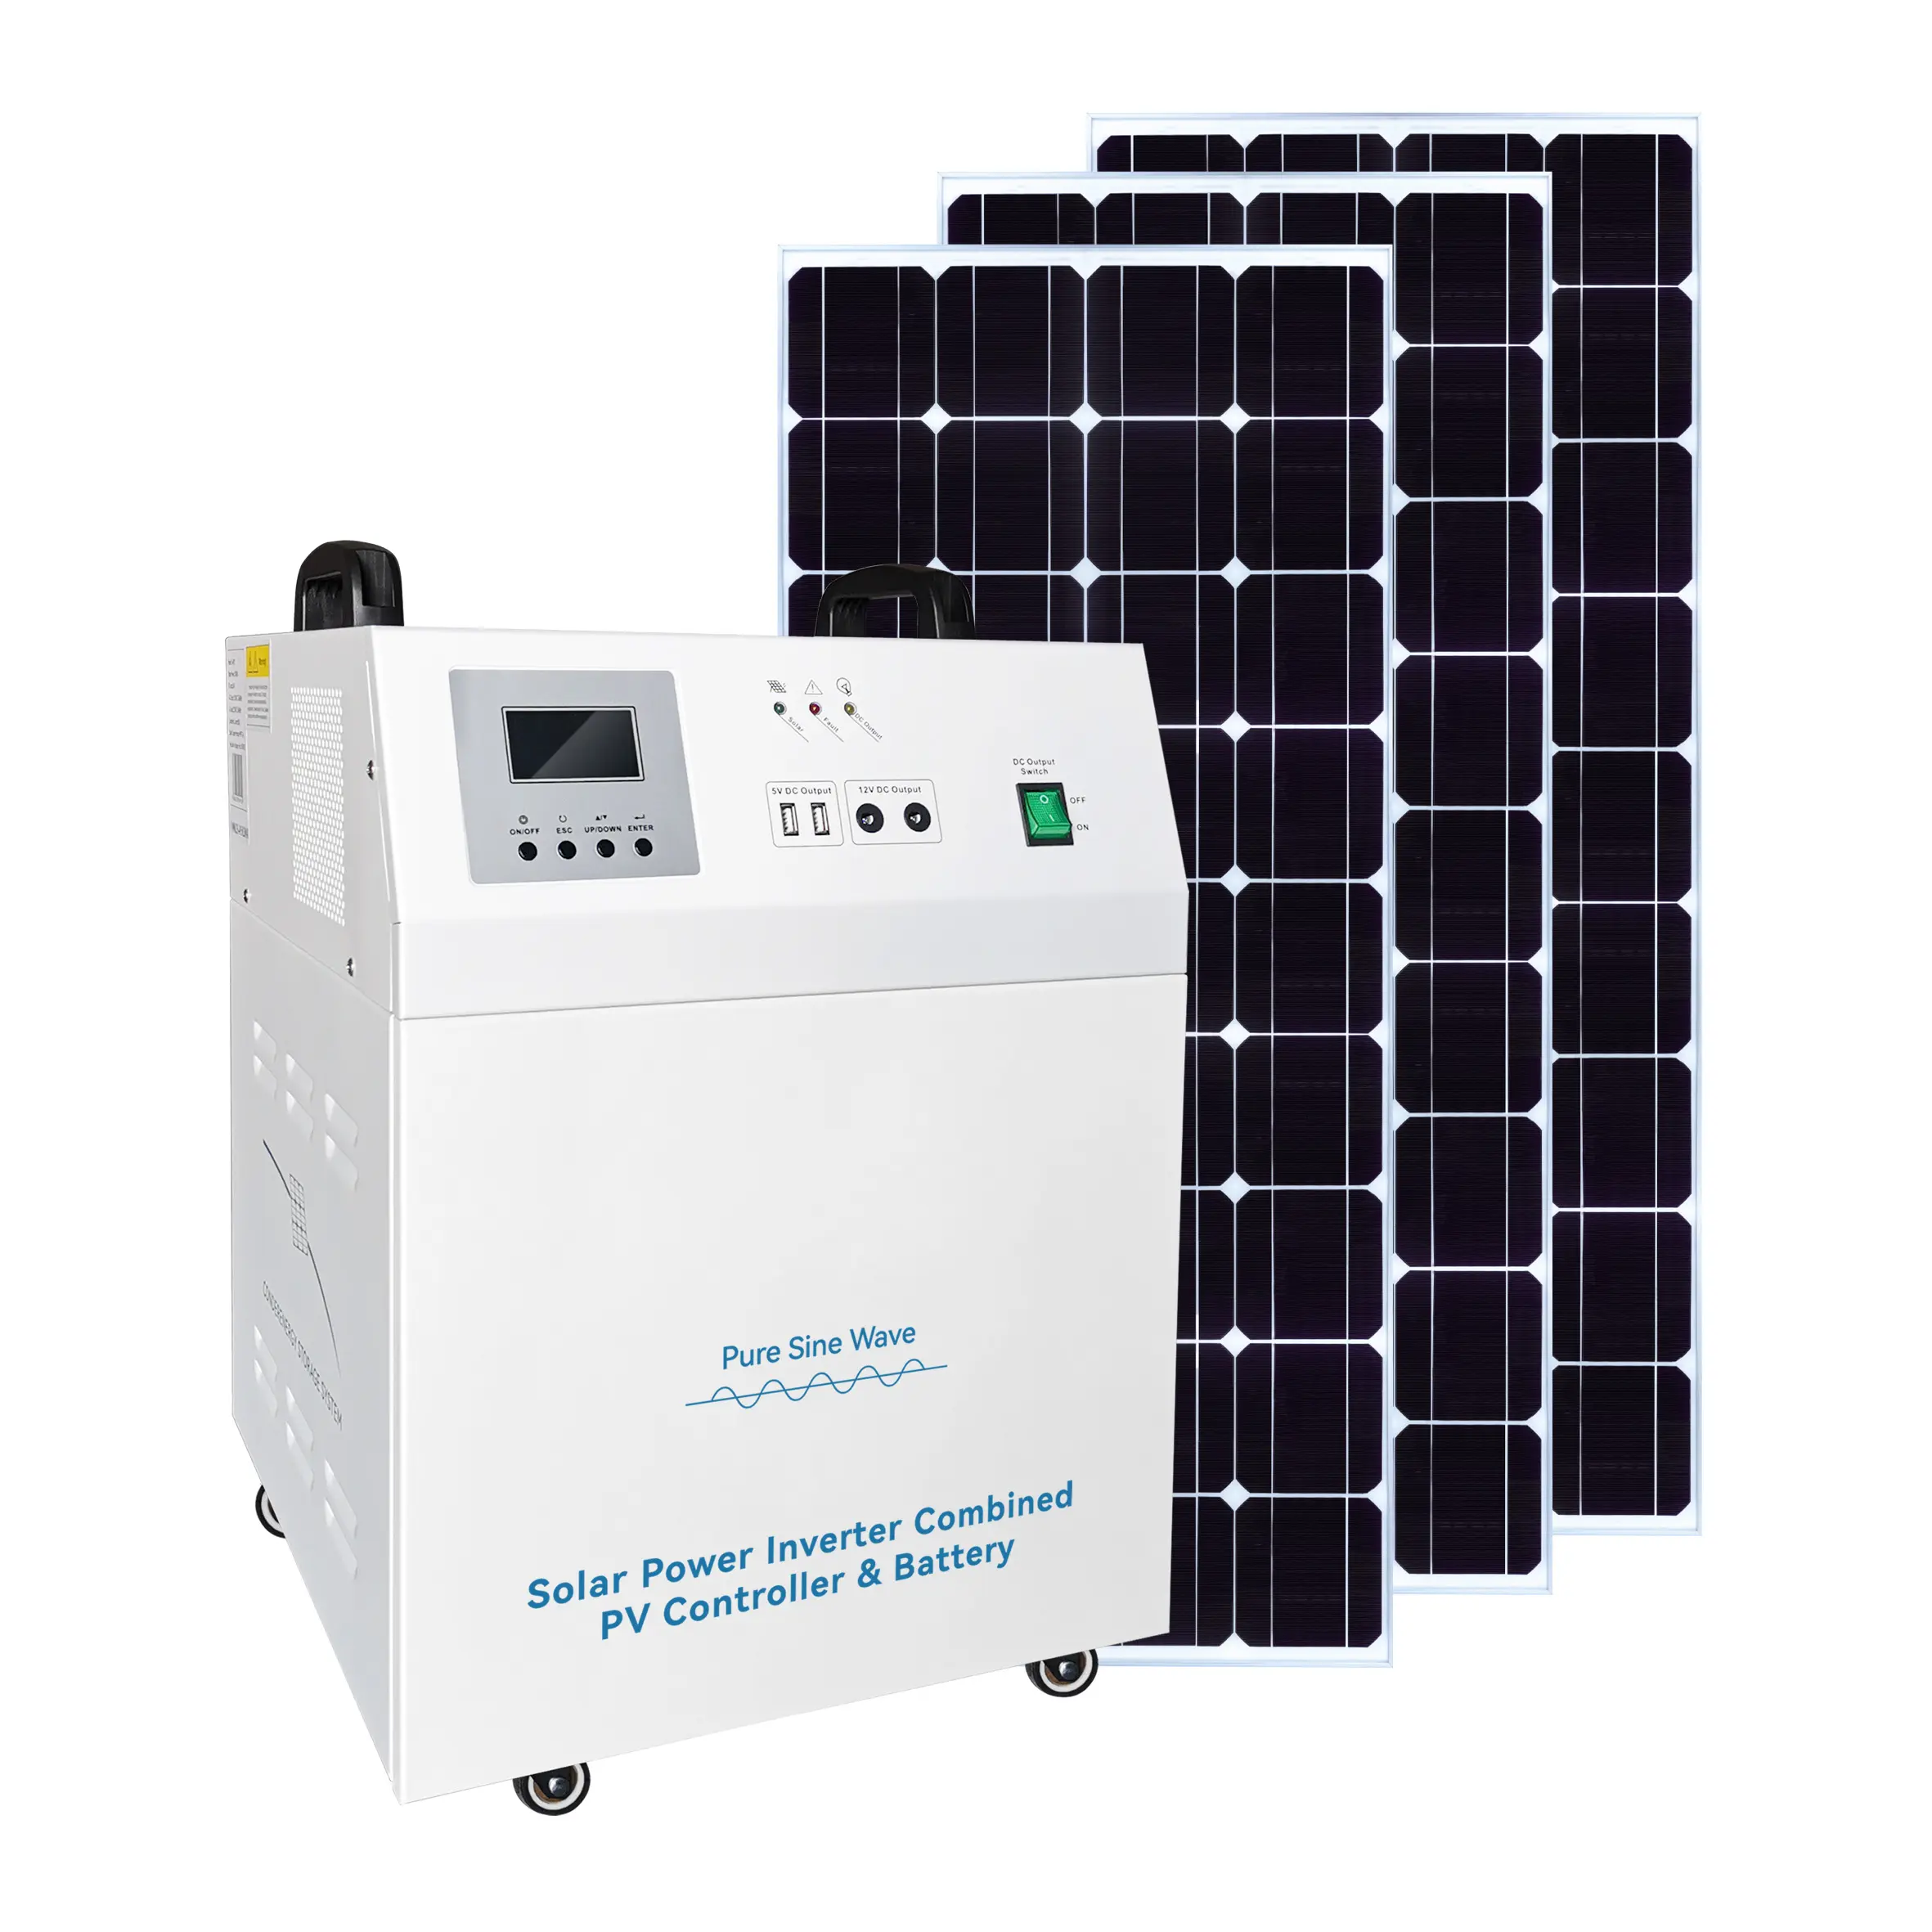 5KW Máy phát điện và 5KW Tấm Pin Mặt Trời lai hệ thống điện gió năng lượng mặt trời hệ thống cho nhà sử dụng Off Grid năng lượng mặt trời hệ thống năng lượng lưu trữ